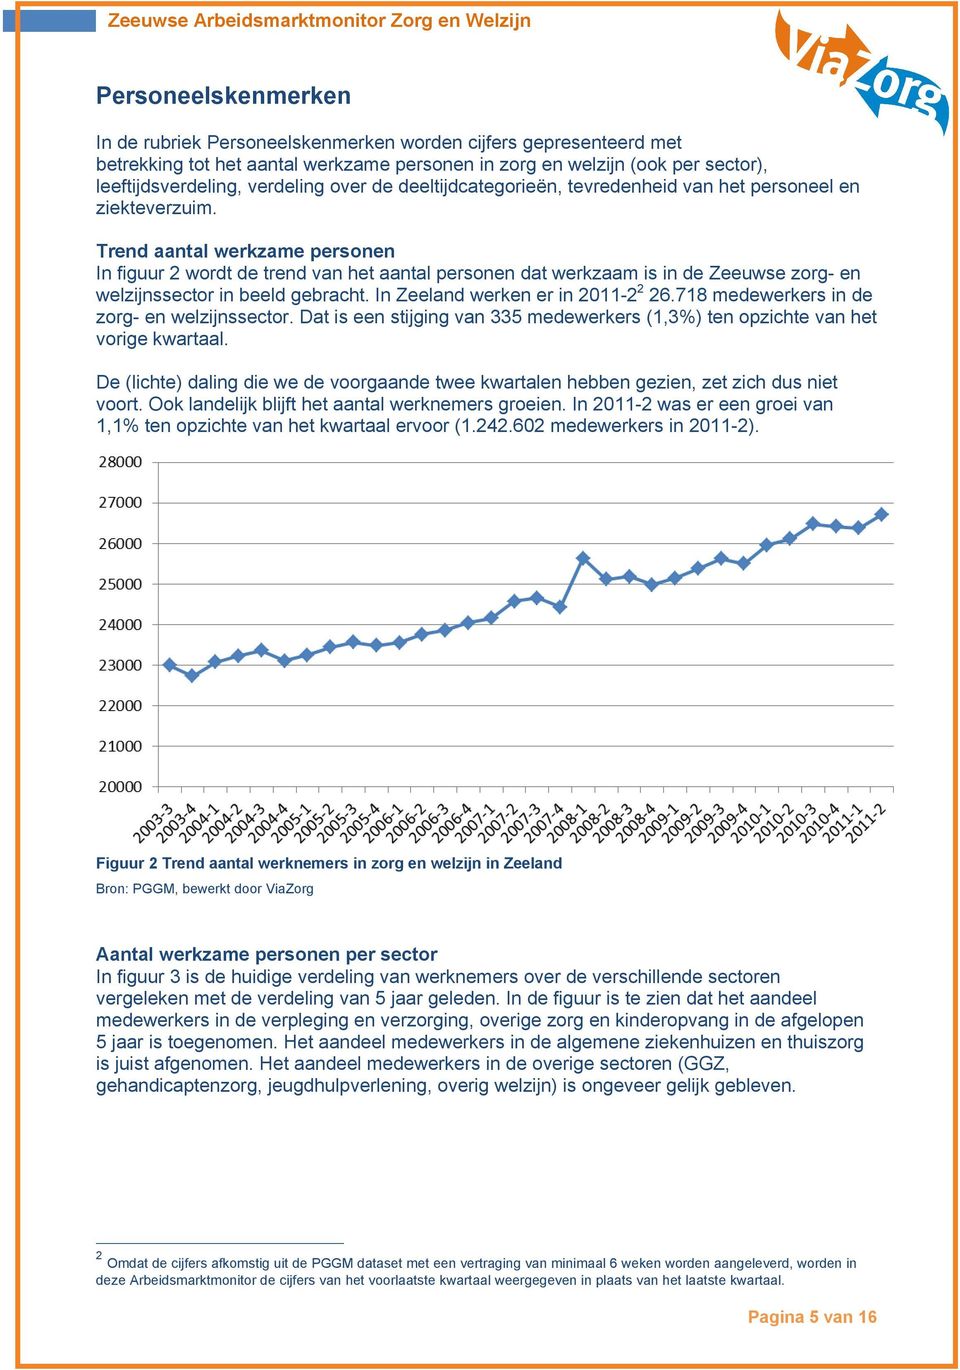 Trend aantal werkzame personen In figuur 2 wordt de trend van het aantal personen dat werkzaam is in de Zeeuwse zorg- en welzijnssector in beeld gebracht. In Zeeland werken er in 2011-2 2 26.